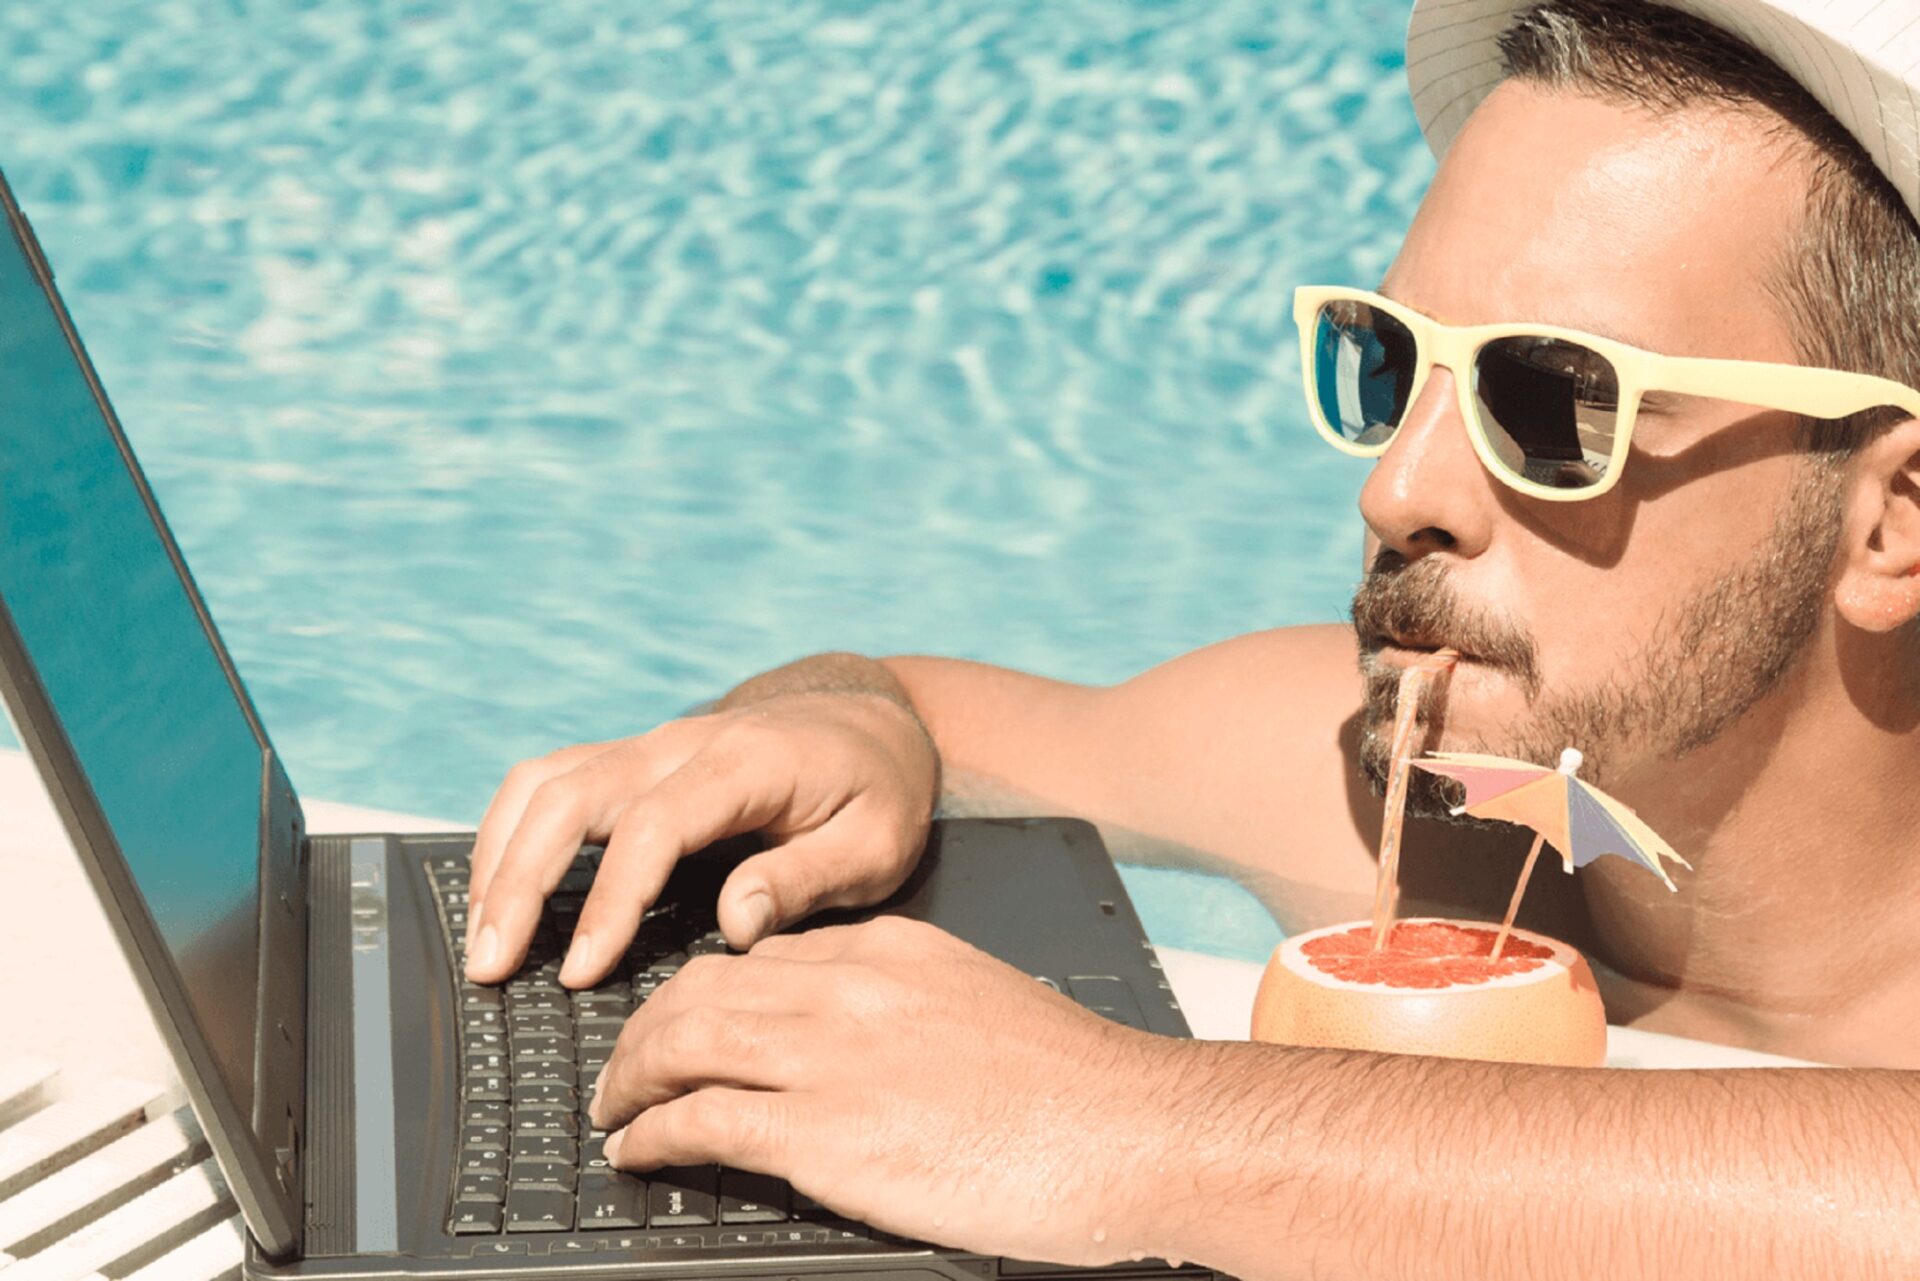 Фрилансер работник. Мужчина с ноутбуком на море. Бизнесмен на отдыхе. Бизнесмен на пляже с ноутбуком. Бизнесмен фрилансер.